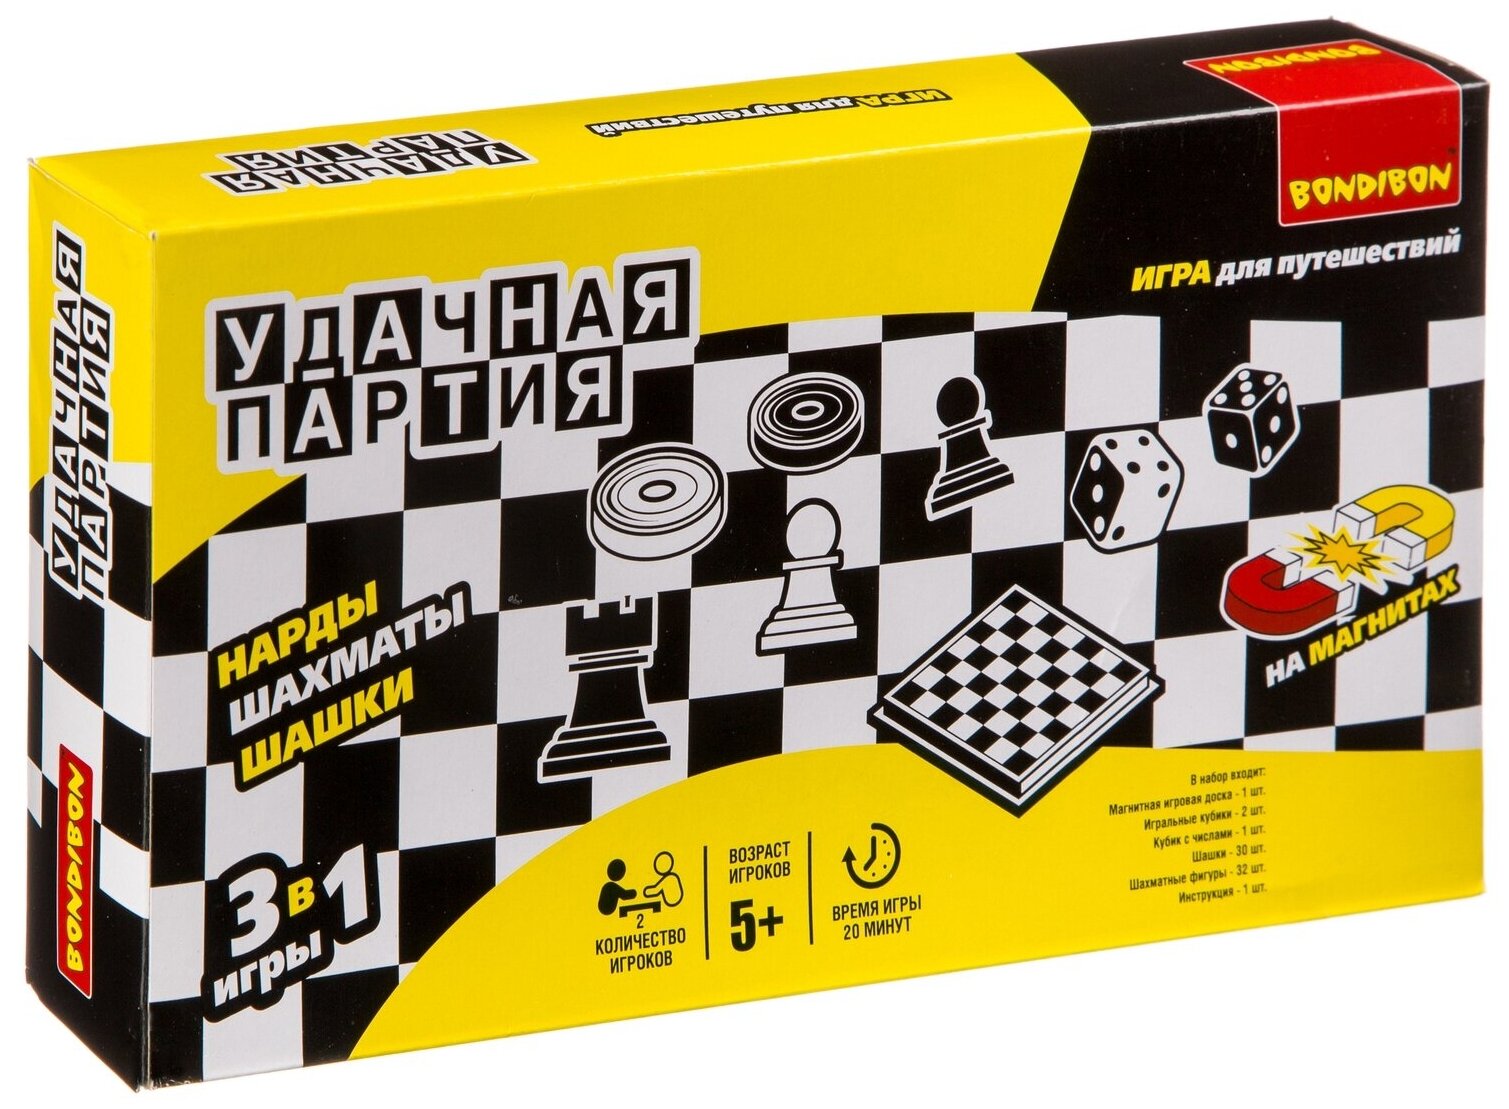 Набор настольных игр Bondibon "Удачная партия", 3в1: нарды, шашки, шахматы